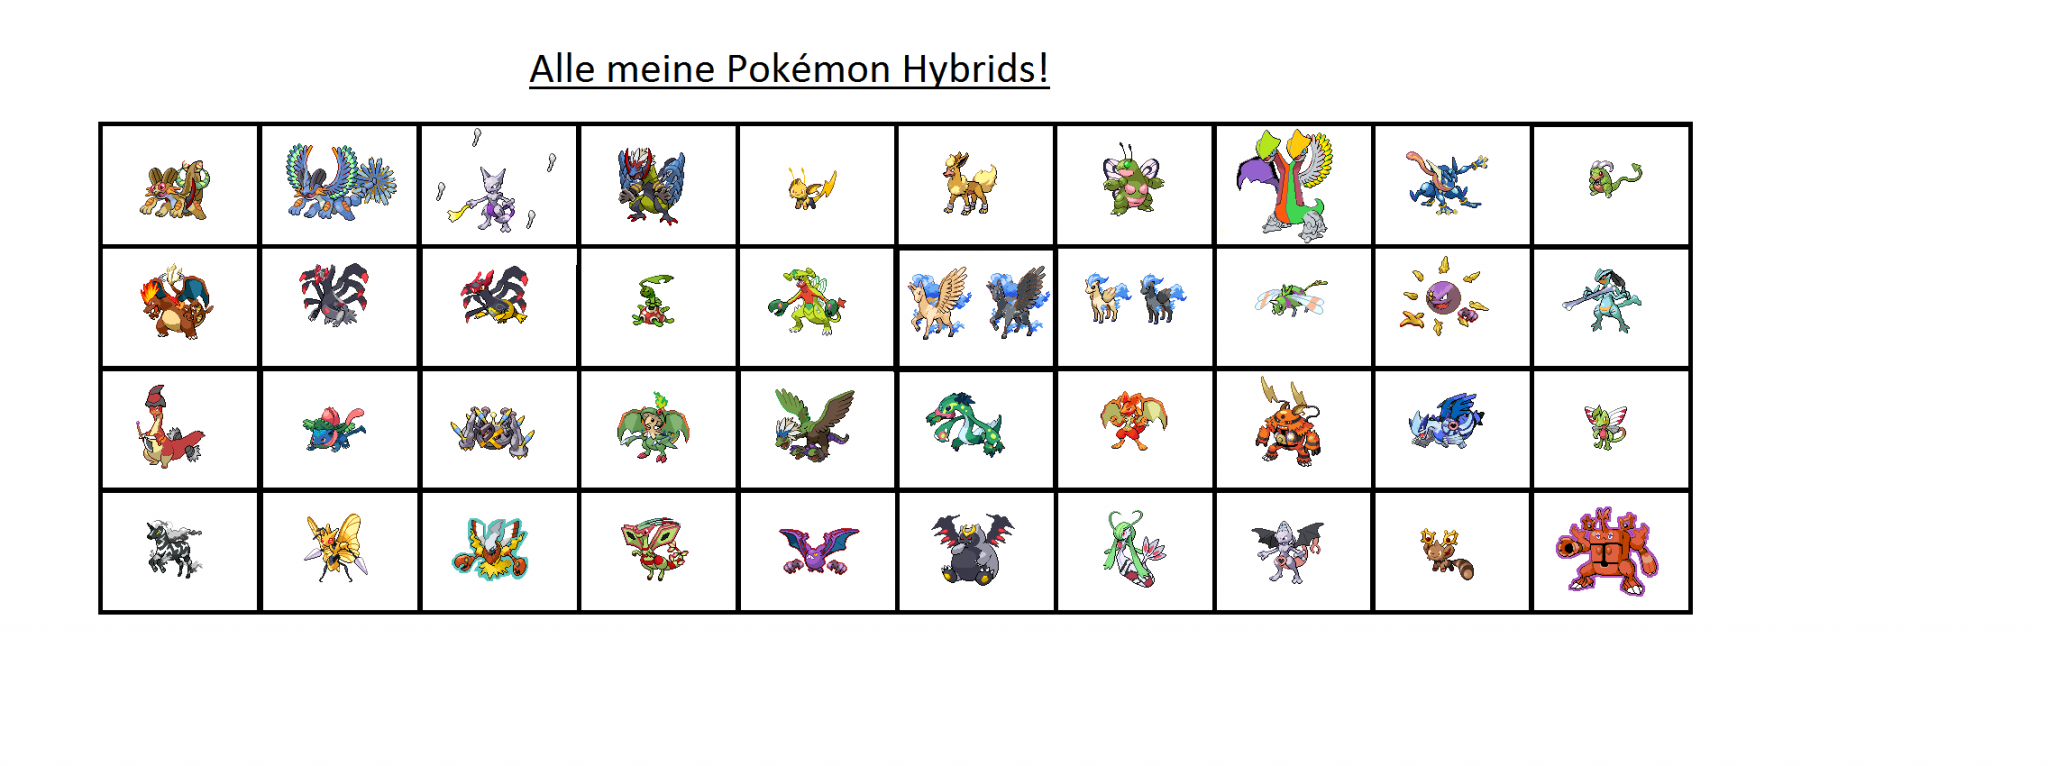 40 Pokémon Hybrids